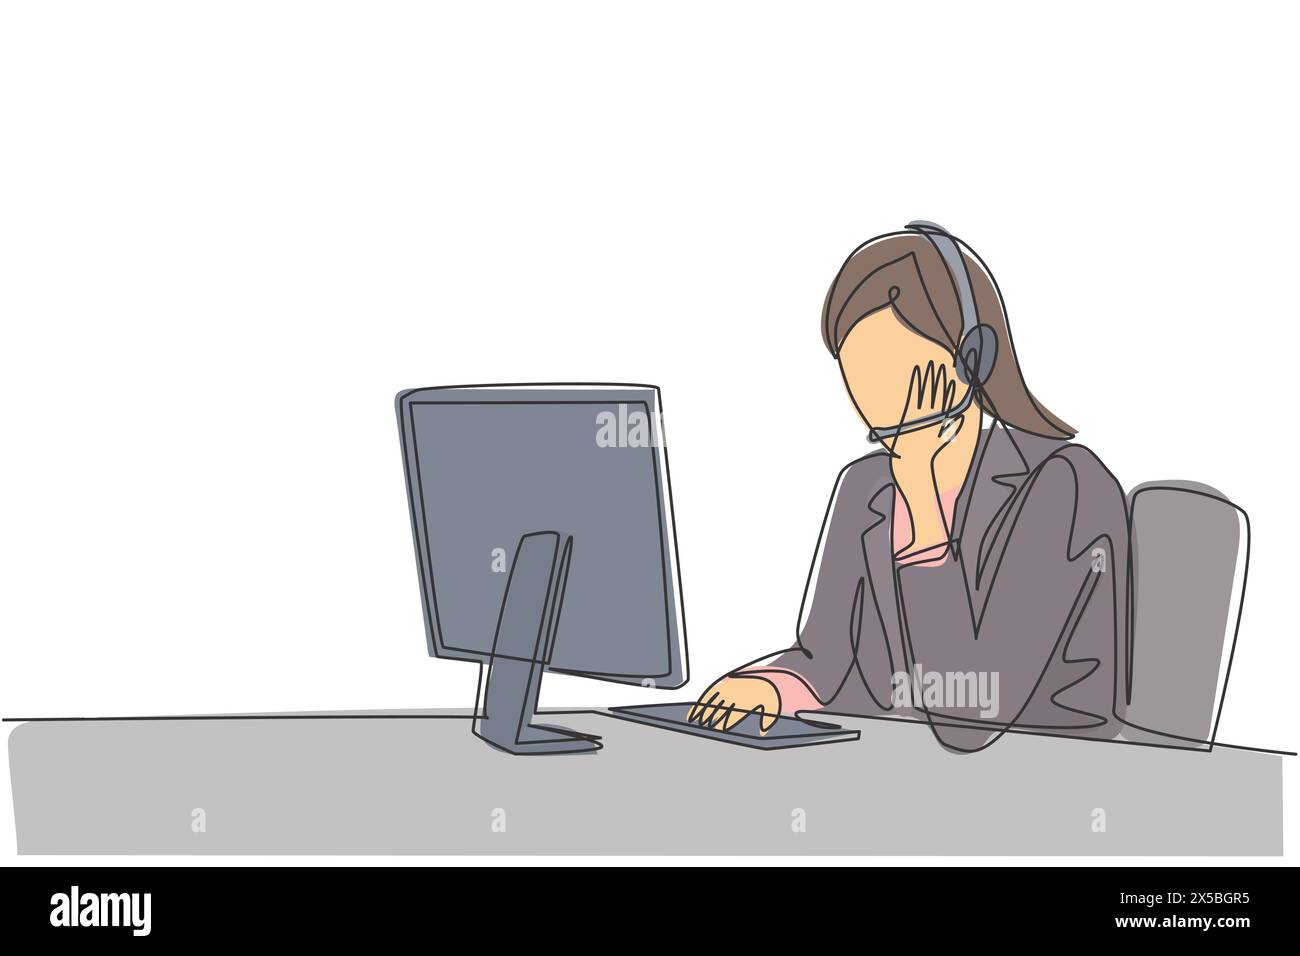 Un dessin en ligne de la jeune femme service à la clientèle écoute pensivement appel du client assis devant l'ordinateur. Concept de centre d'appels c Illustration de Vecteur